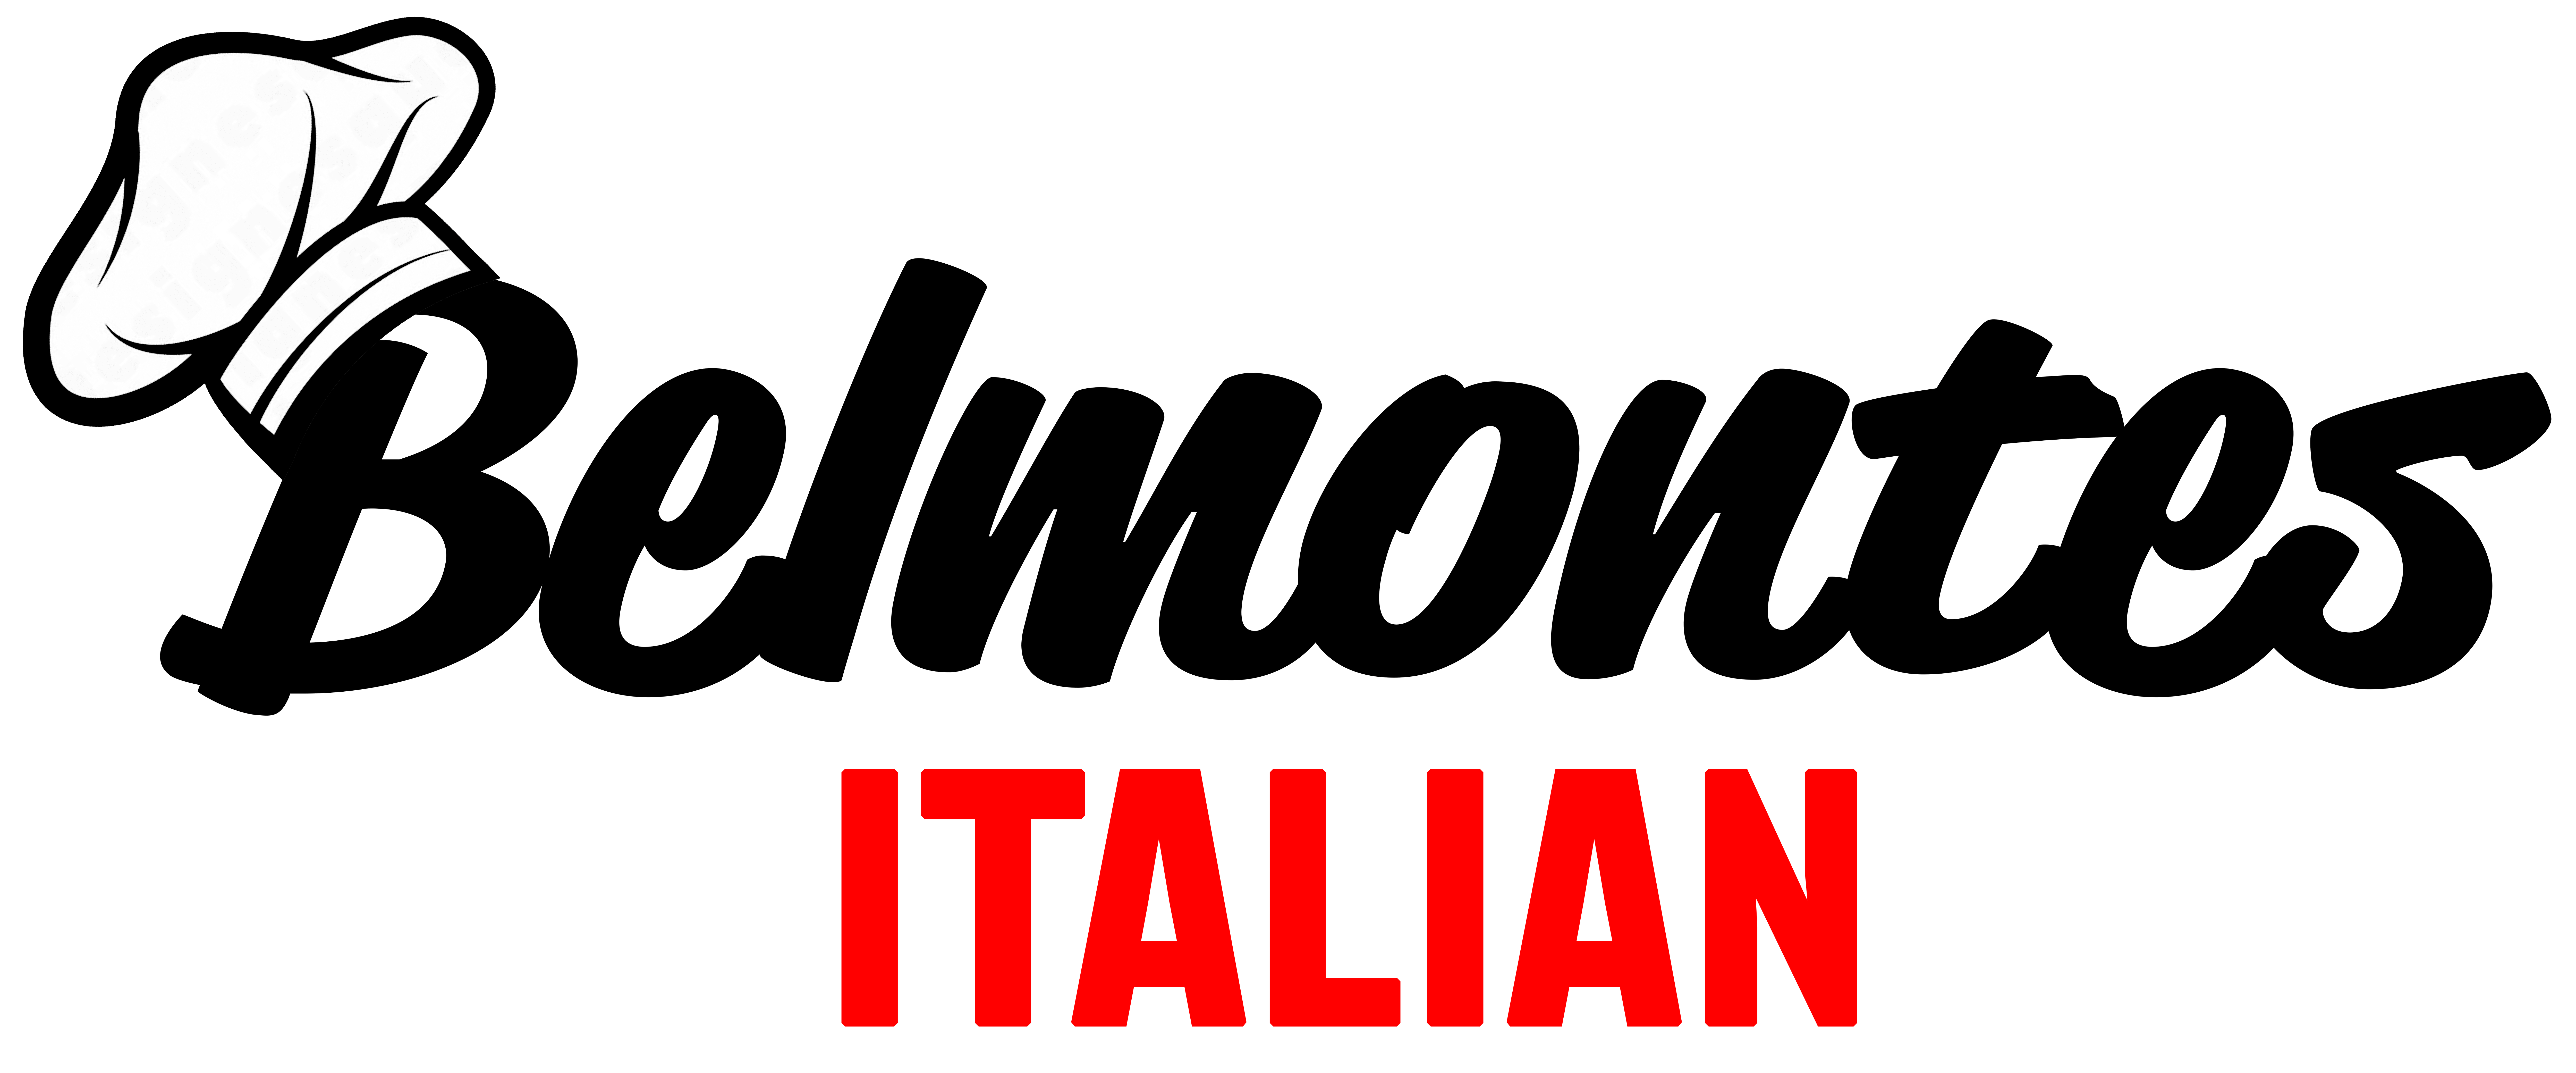 Belmontes Italian